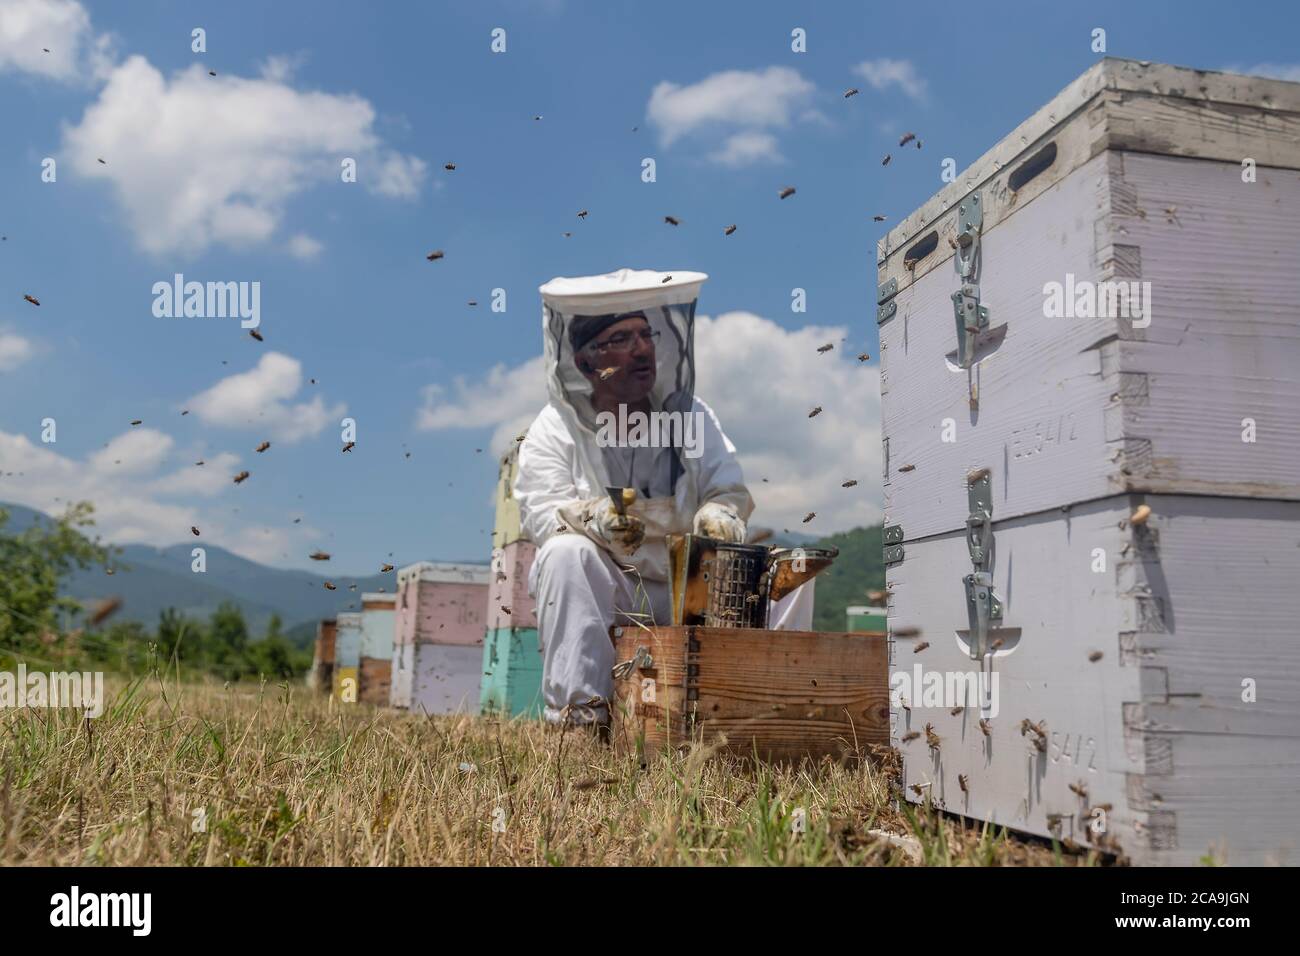 Florina, Grèce - 10 juillet 2020 : apiculteurs travaillant à la collecte du miel dans une région de Florina, dans le nord de la Grèce. Apiculture biologique Banque D'Images